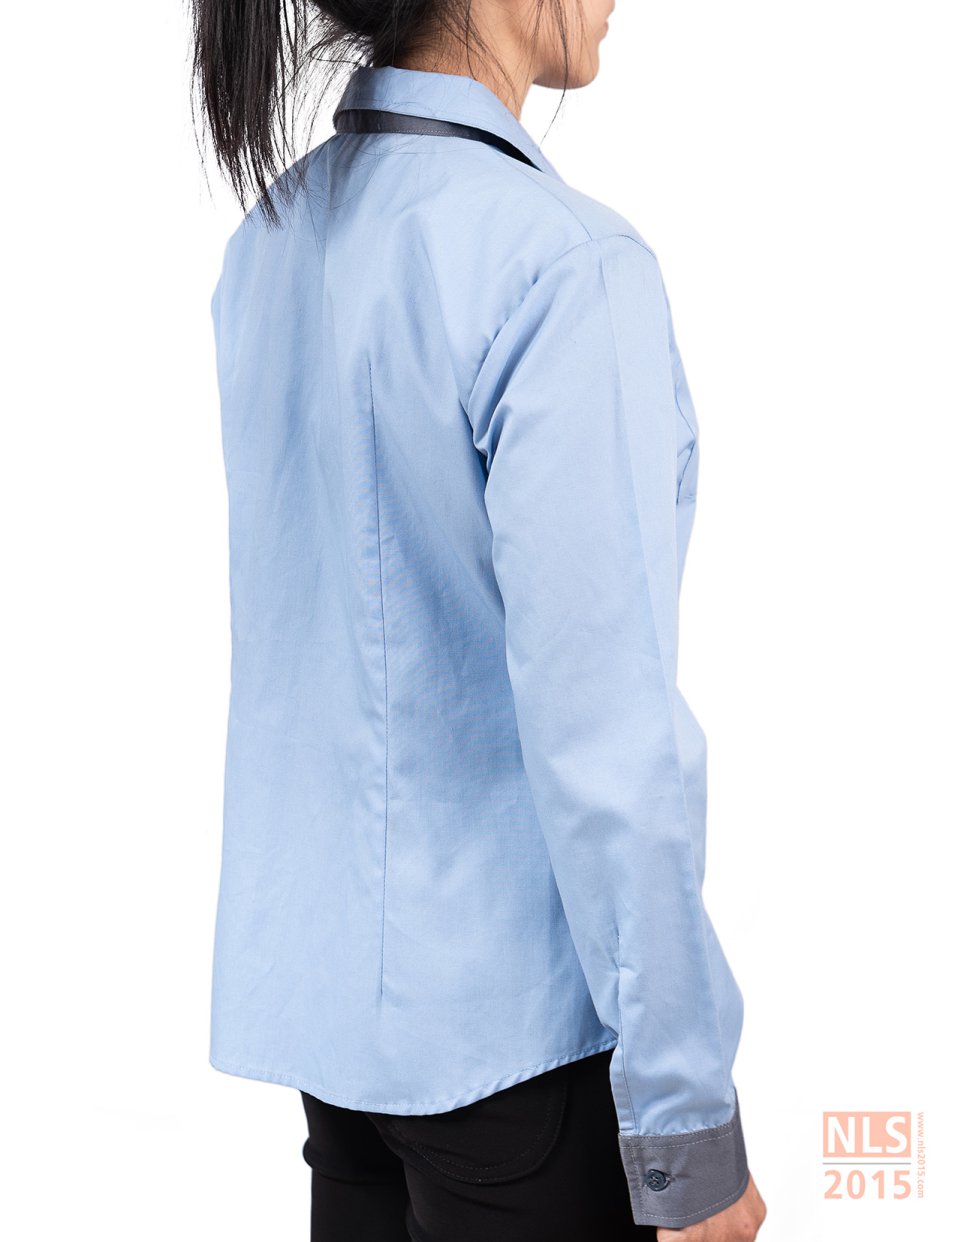 ตัวอย่างเสื้อเชิ้ตพนักงานออฟฟิตบริษัท EVER BRIGHT / นลินสิริ รับตัดเสื้อ รับผลิตเสื้อเชิ้ตพนักงานรูปที่ 